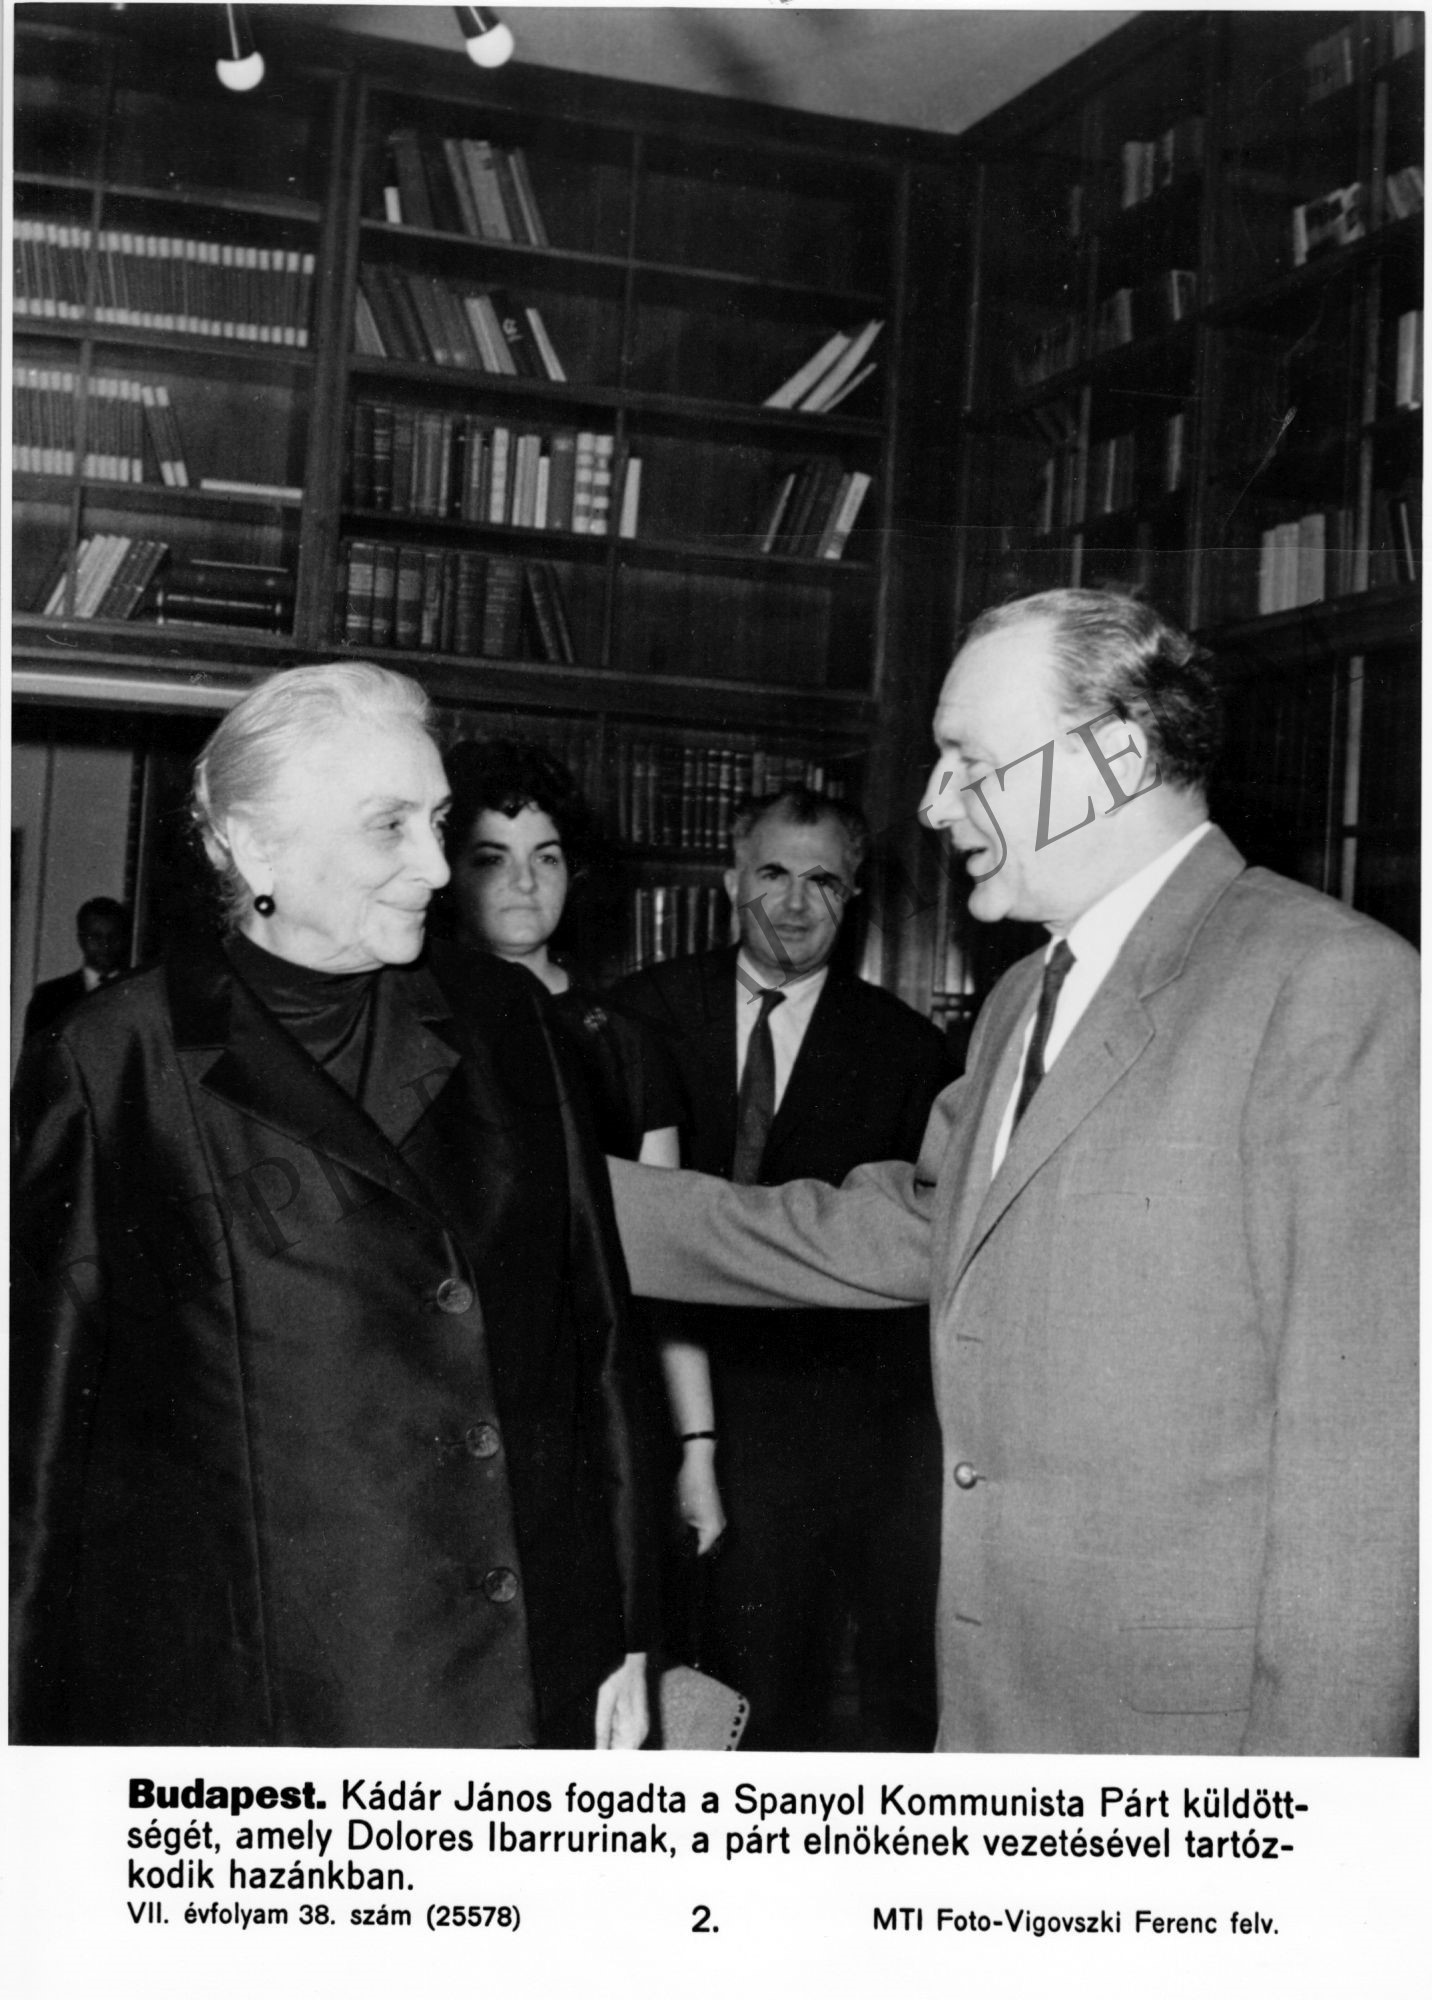 Kádár János fogadta a Spanyol Kommunista Párt küldöttségét, amely Dolores Ibarrurinak, a párt elnökének vezetésével tartózkodik hazánkban (Rippl-Rónai Múzeum CC BY-NC-SA)